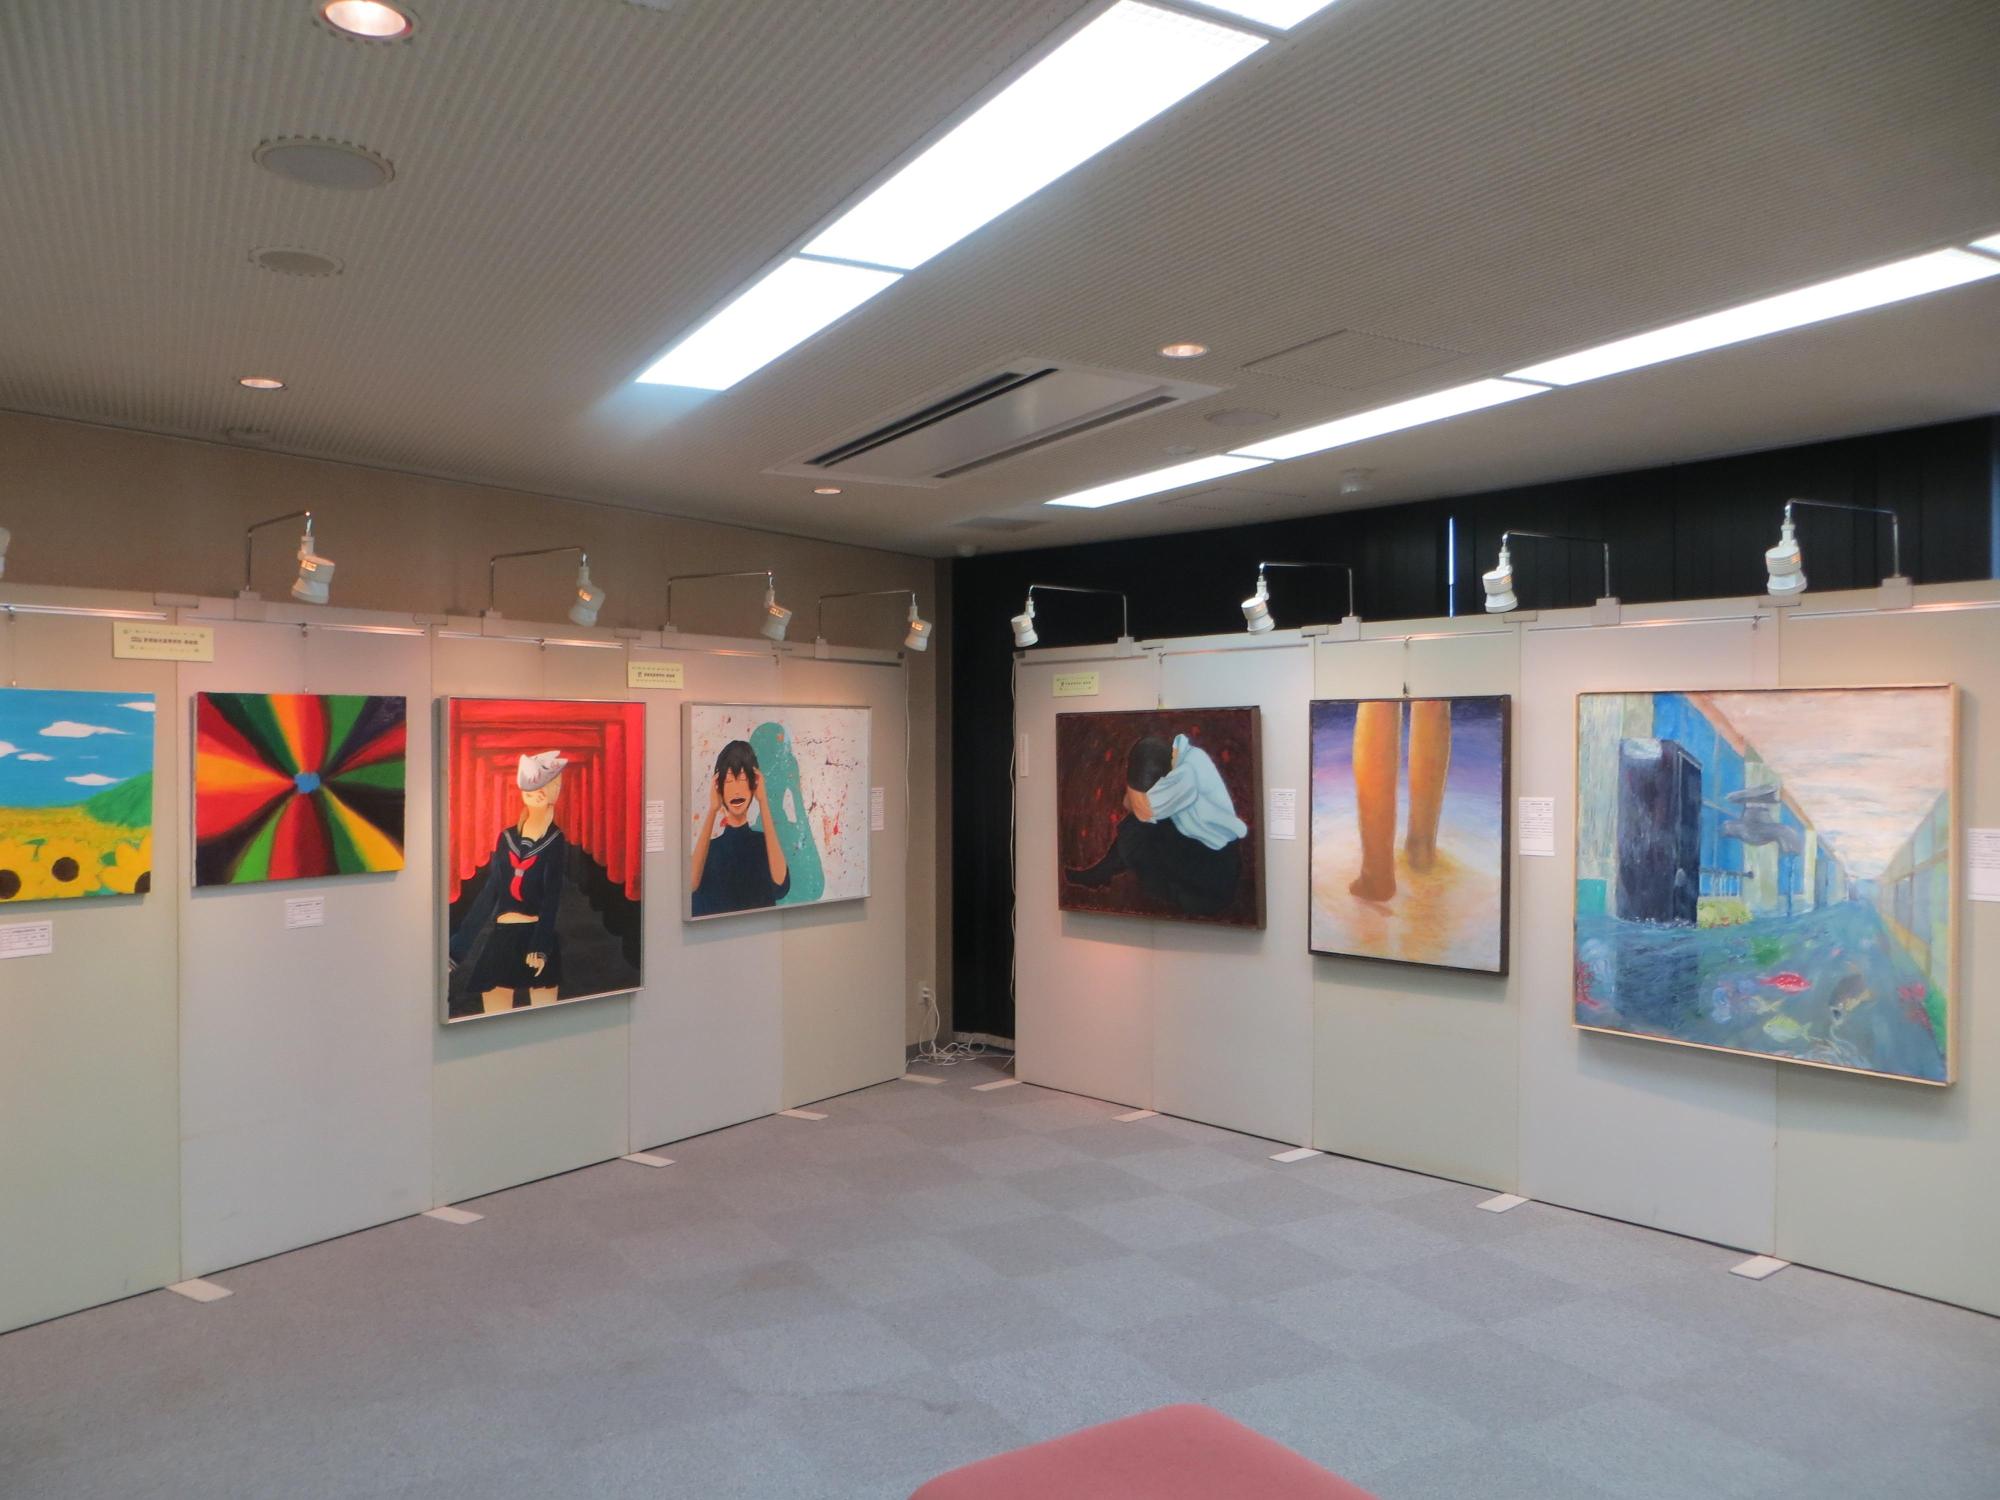 1階視聴覚室に展示されている作品を左側から撮った写真